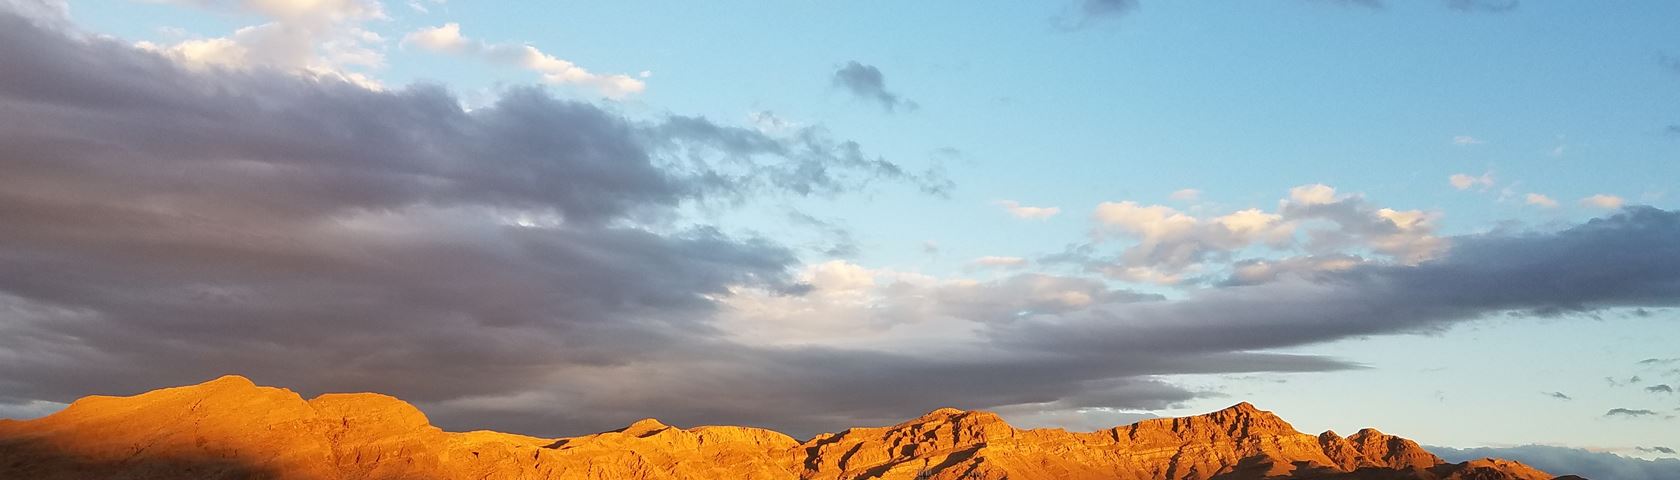 The Desert Mountain sunset